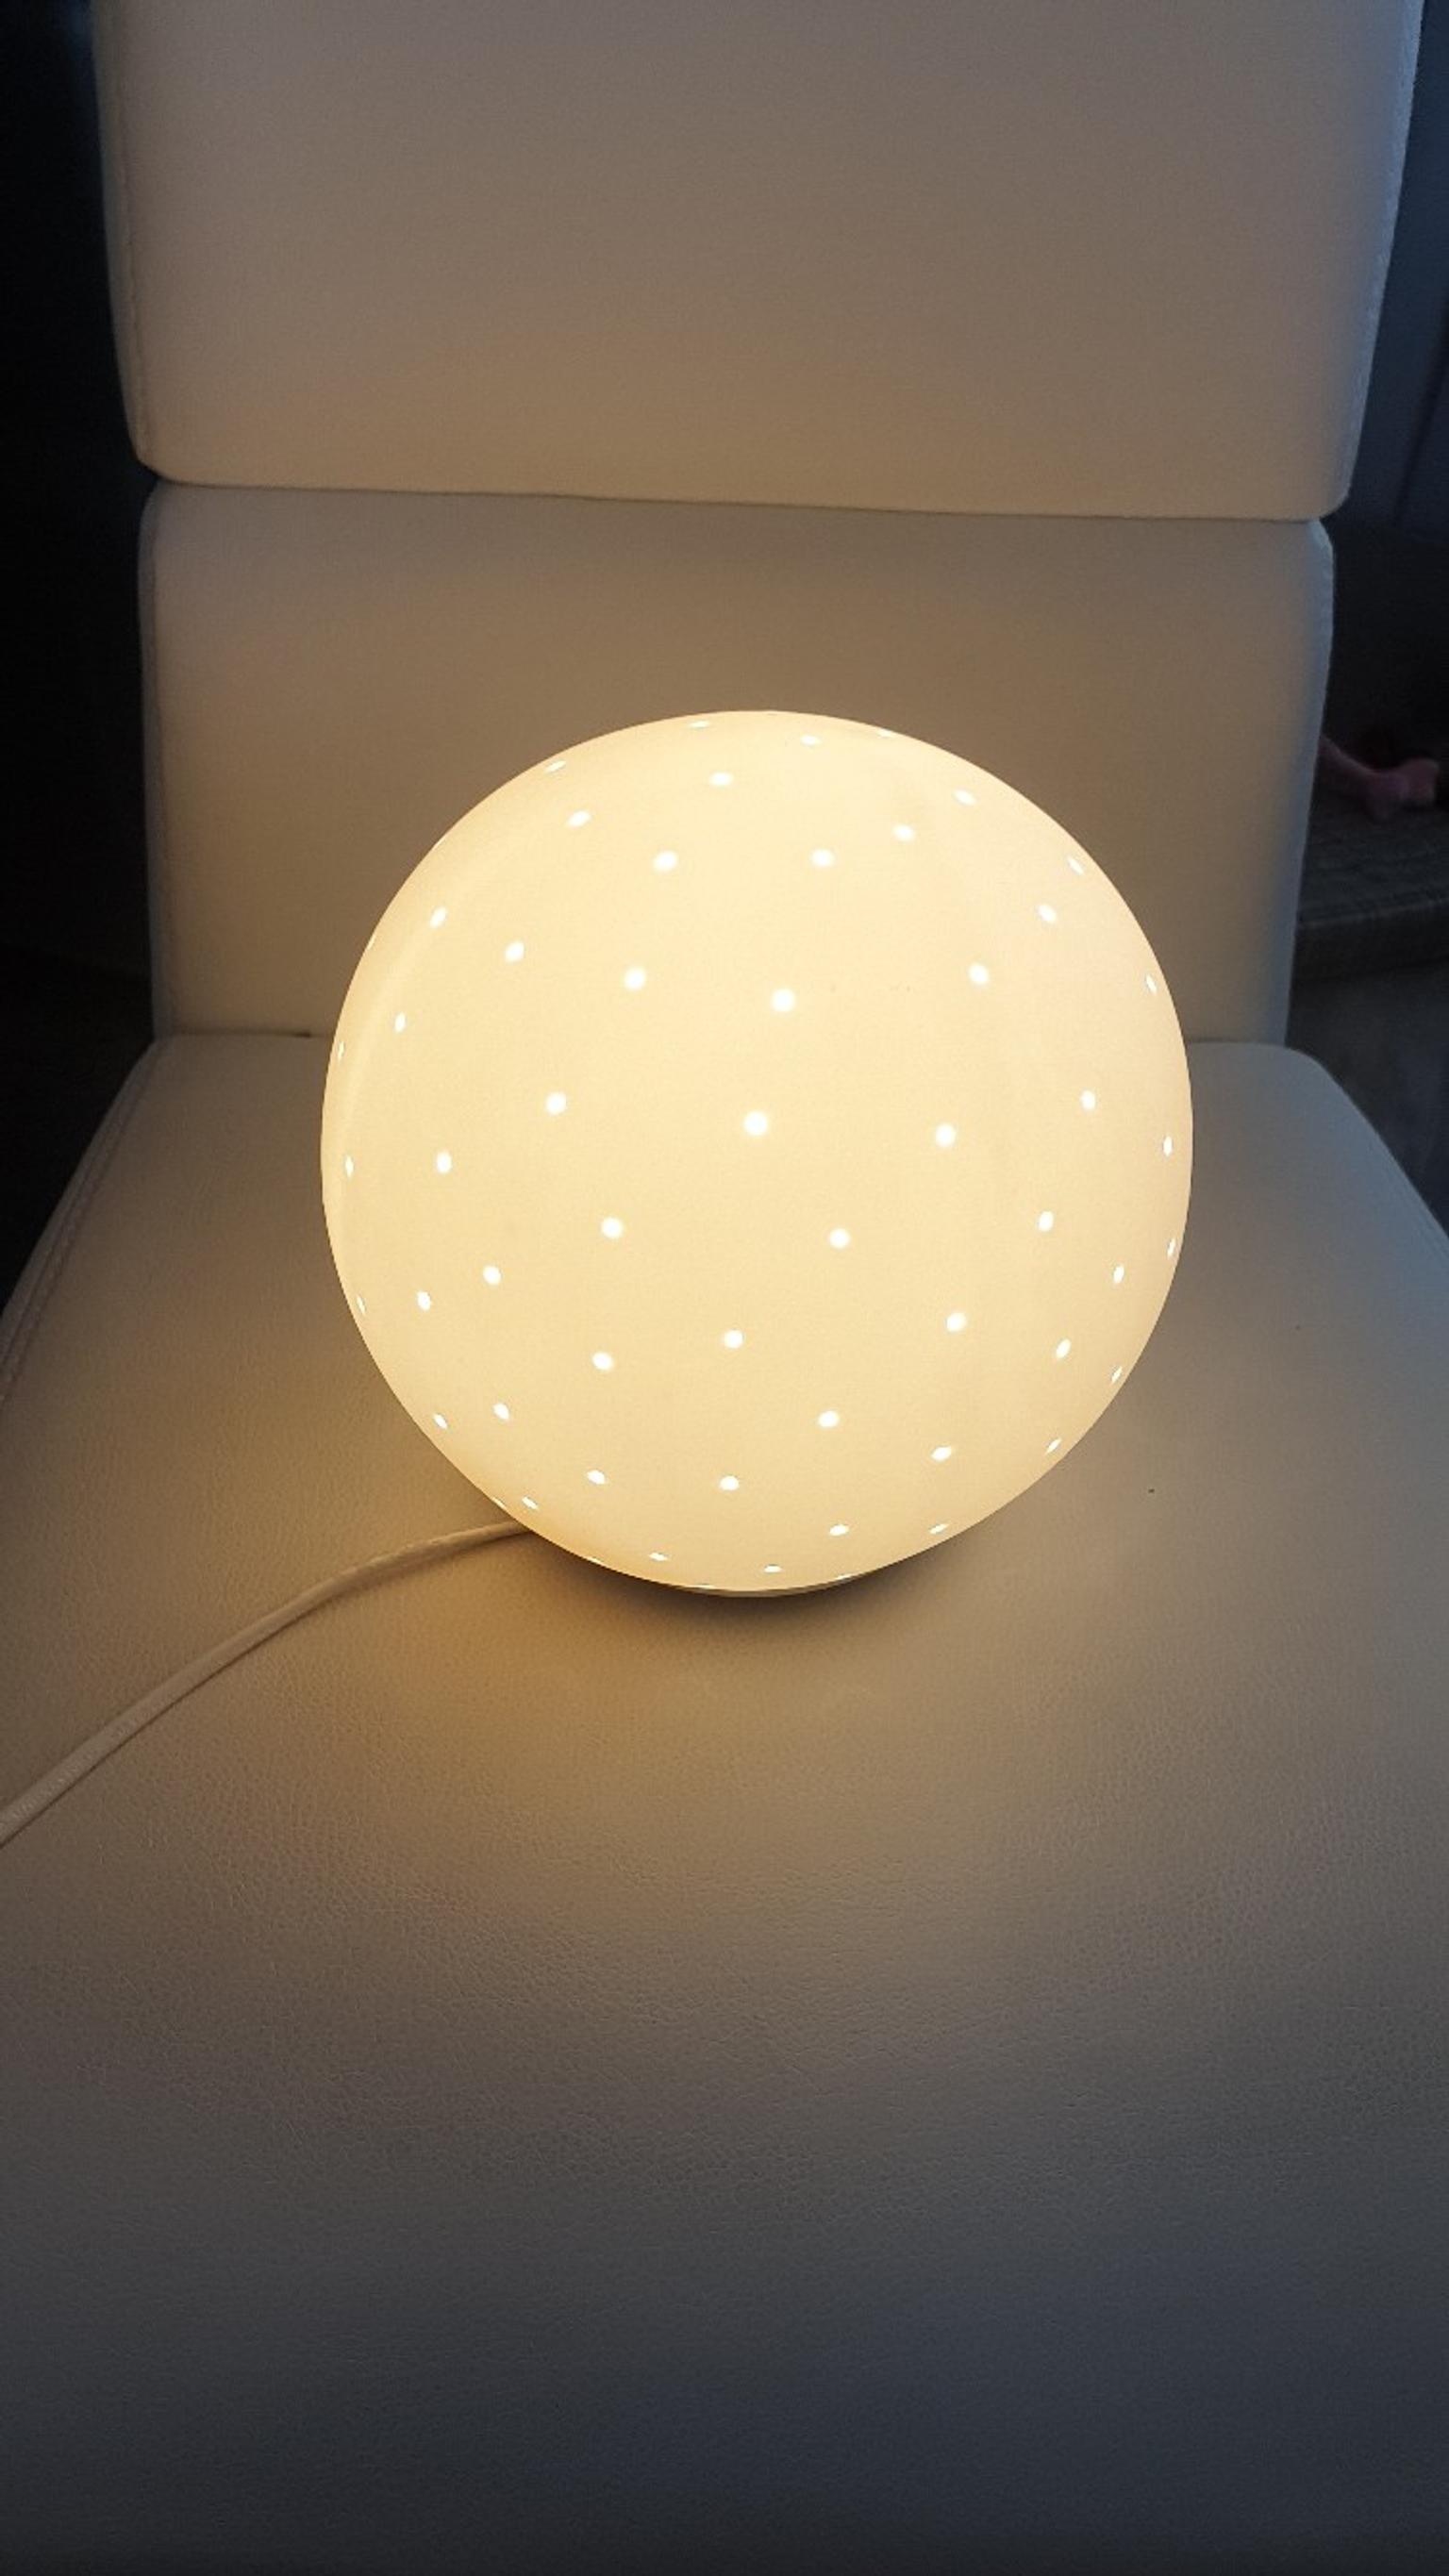 LED Tischleuchte Tischlampe Nachttischlampe Diamond Shape Matt Industrie Design.